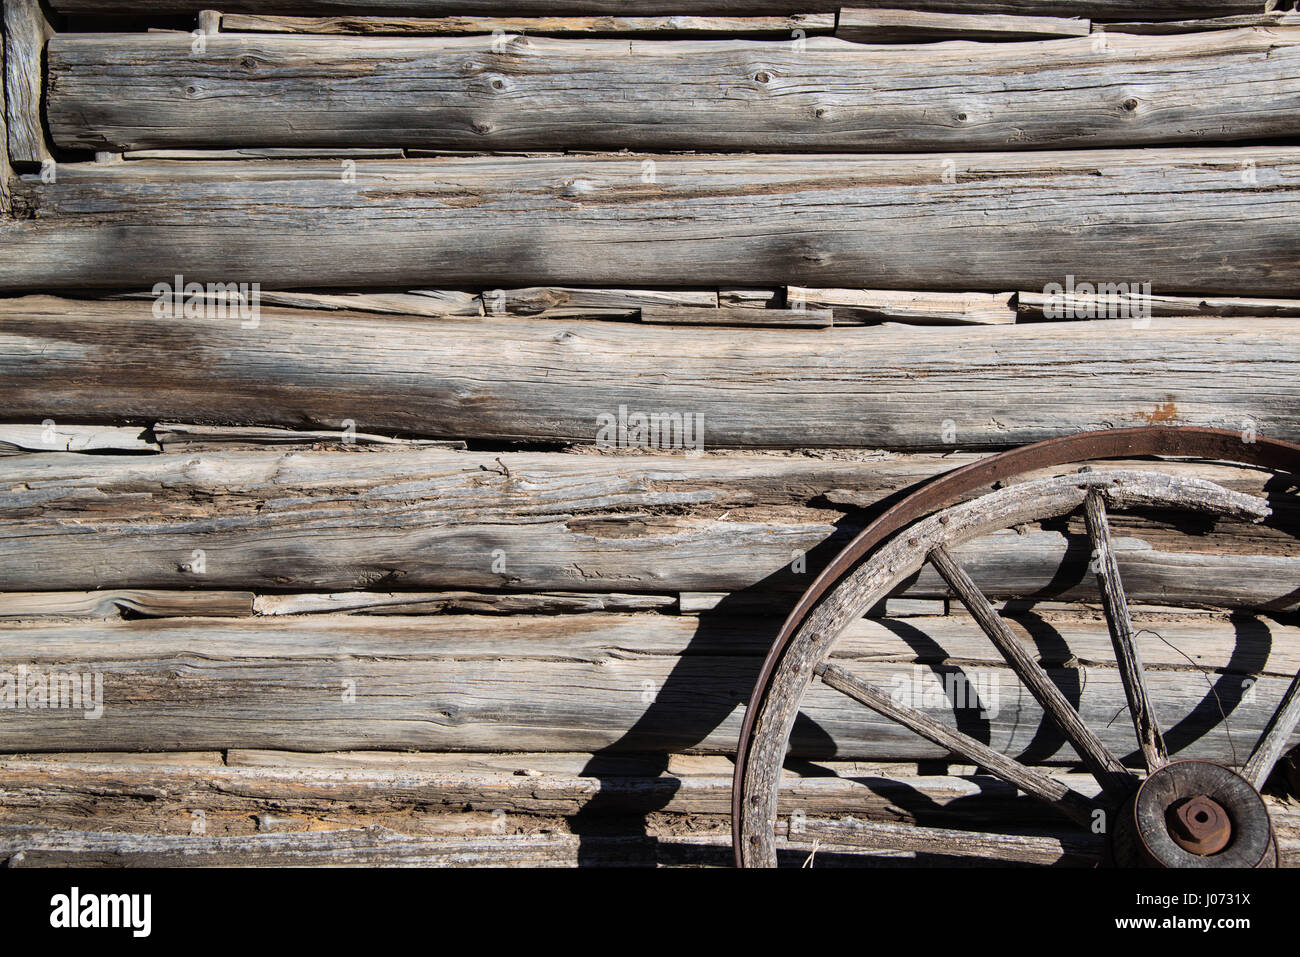 La mano cortada de logs antiguos y chinking del viejo oeste de cabina y rueda de carro barnwood Foto de stock